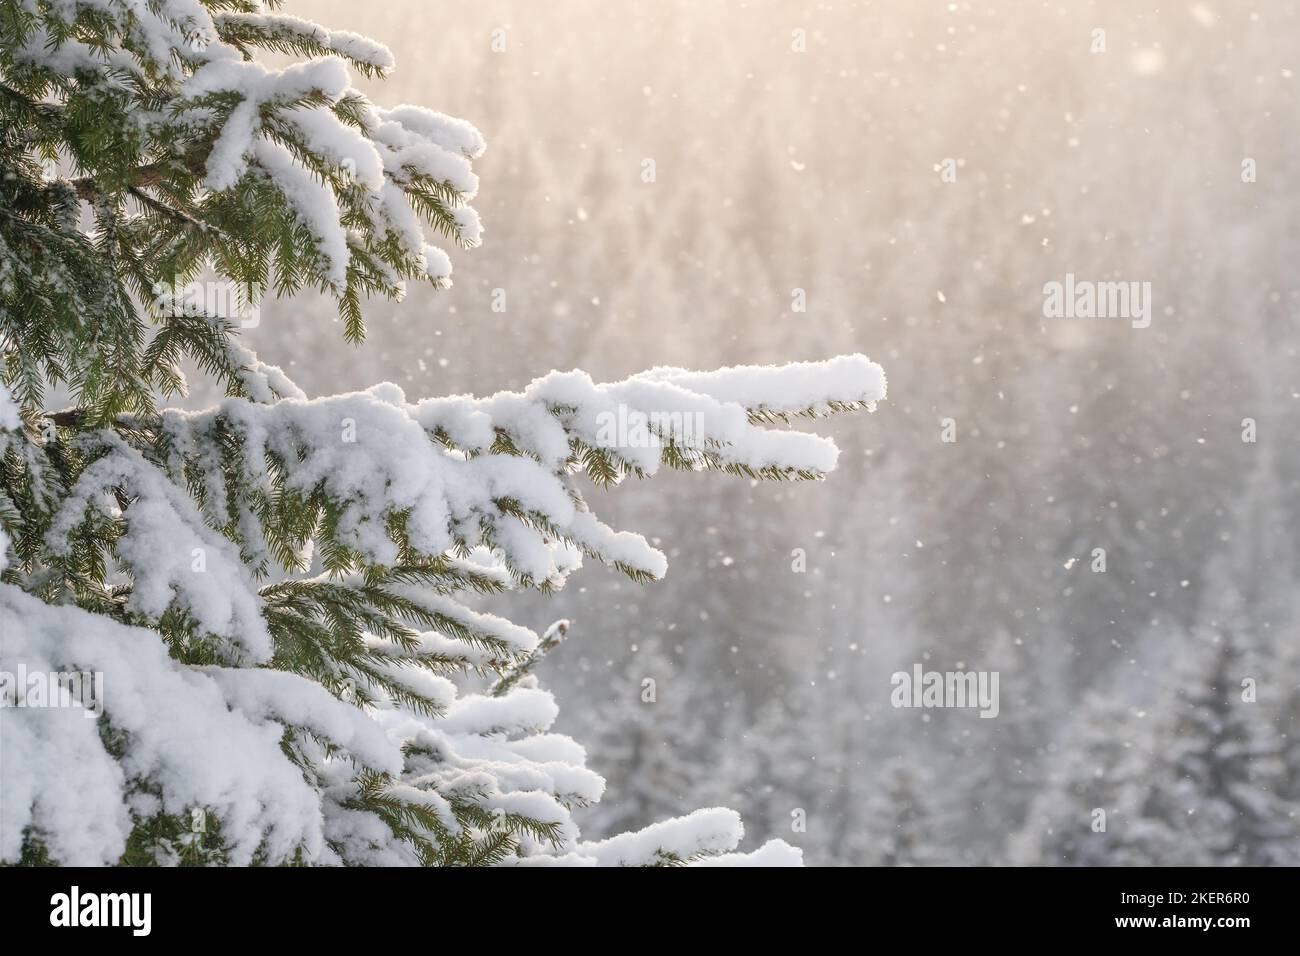 Magnifique paysage d'hiver avec de la neige tombant sur une branche d'épinette en gros plan Banque D'Images